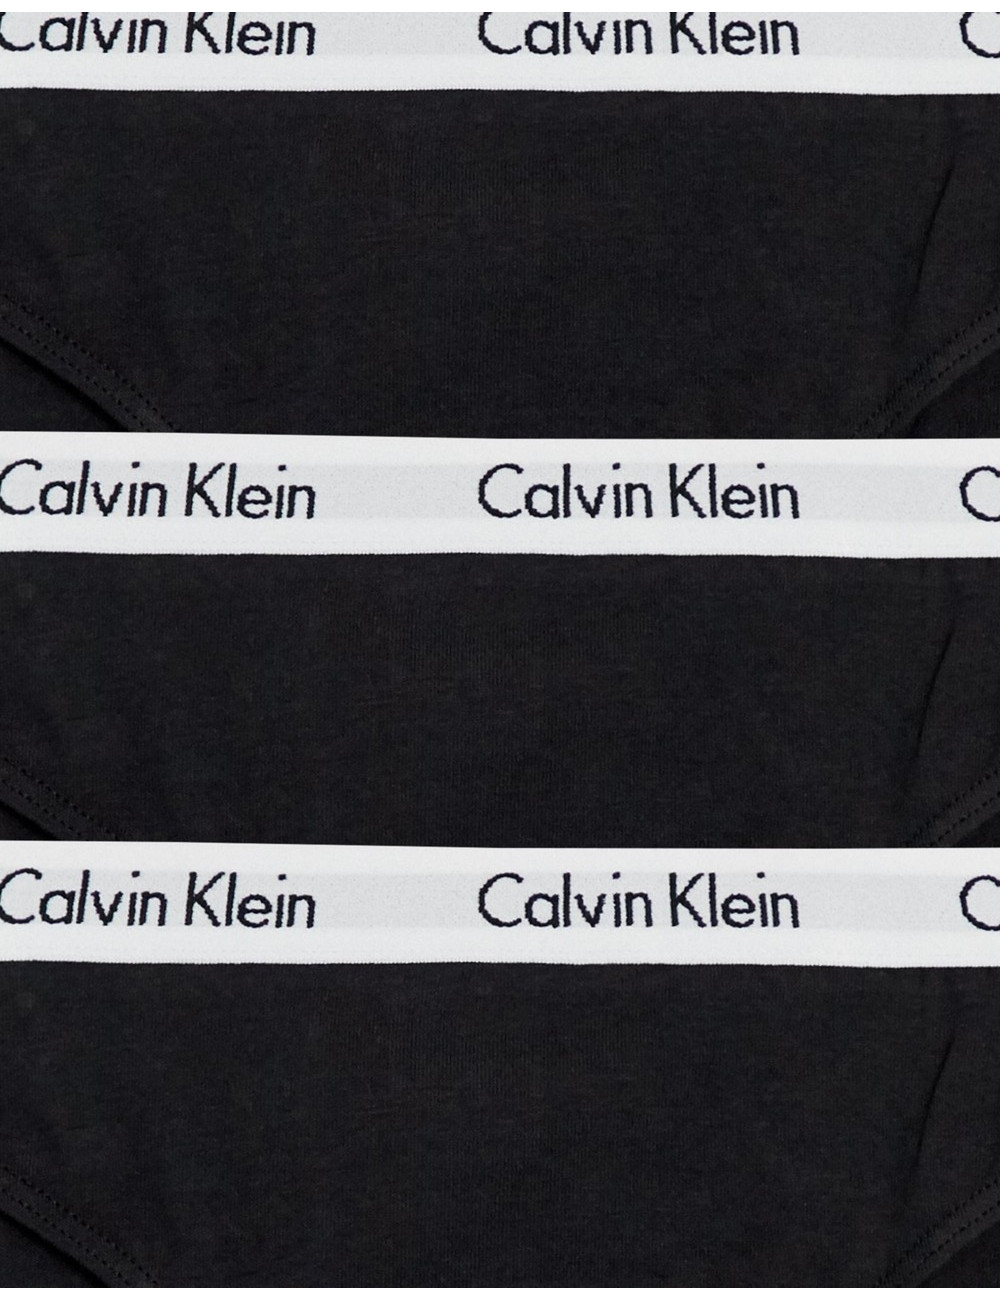 Calvin Klein carousel 3...